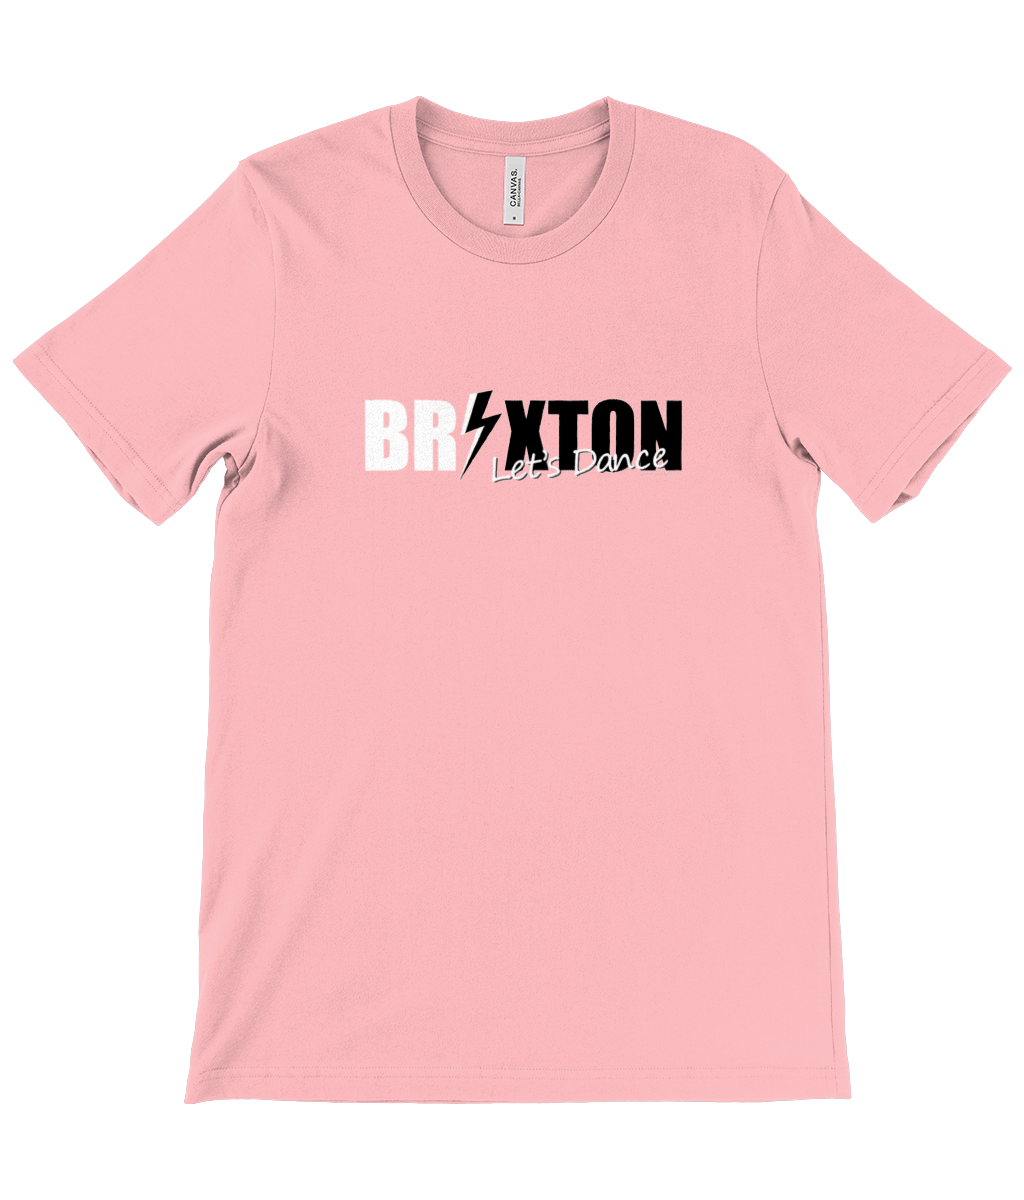 Let's Dance Brixton t-shirt pink